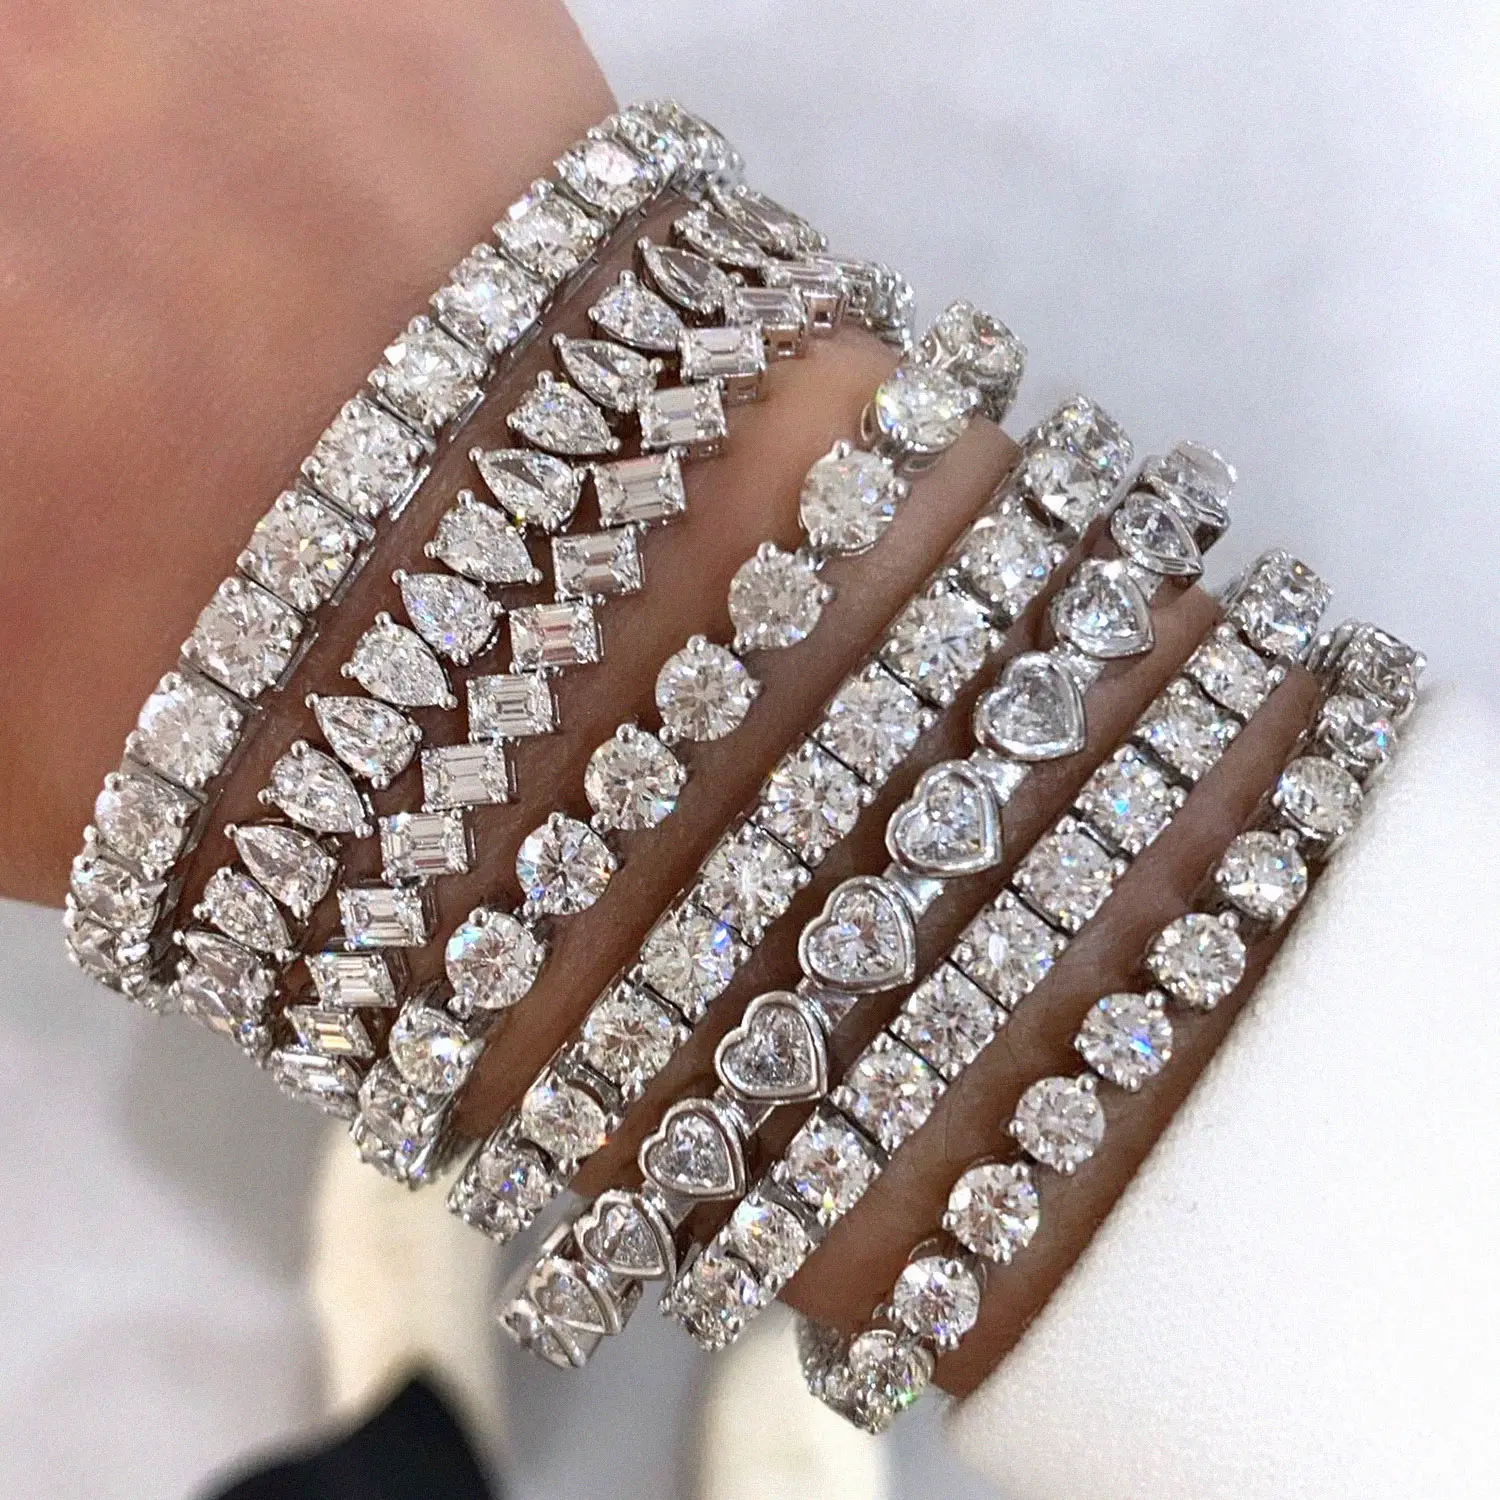 Ice out pulseiras femininas, acessórios charme 925 prata pulseiras 18k ouro joias finas 5a zircônia moda tênis pulseira joias